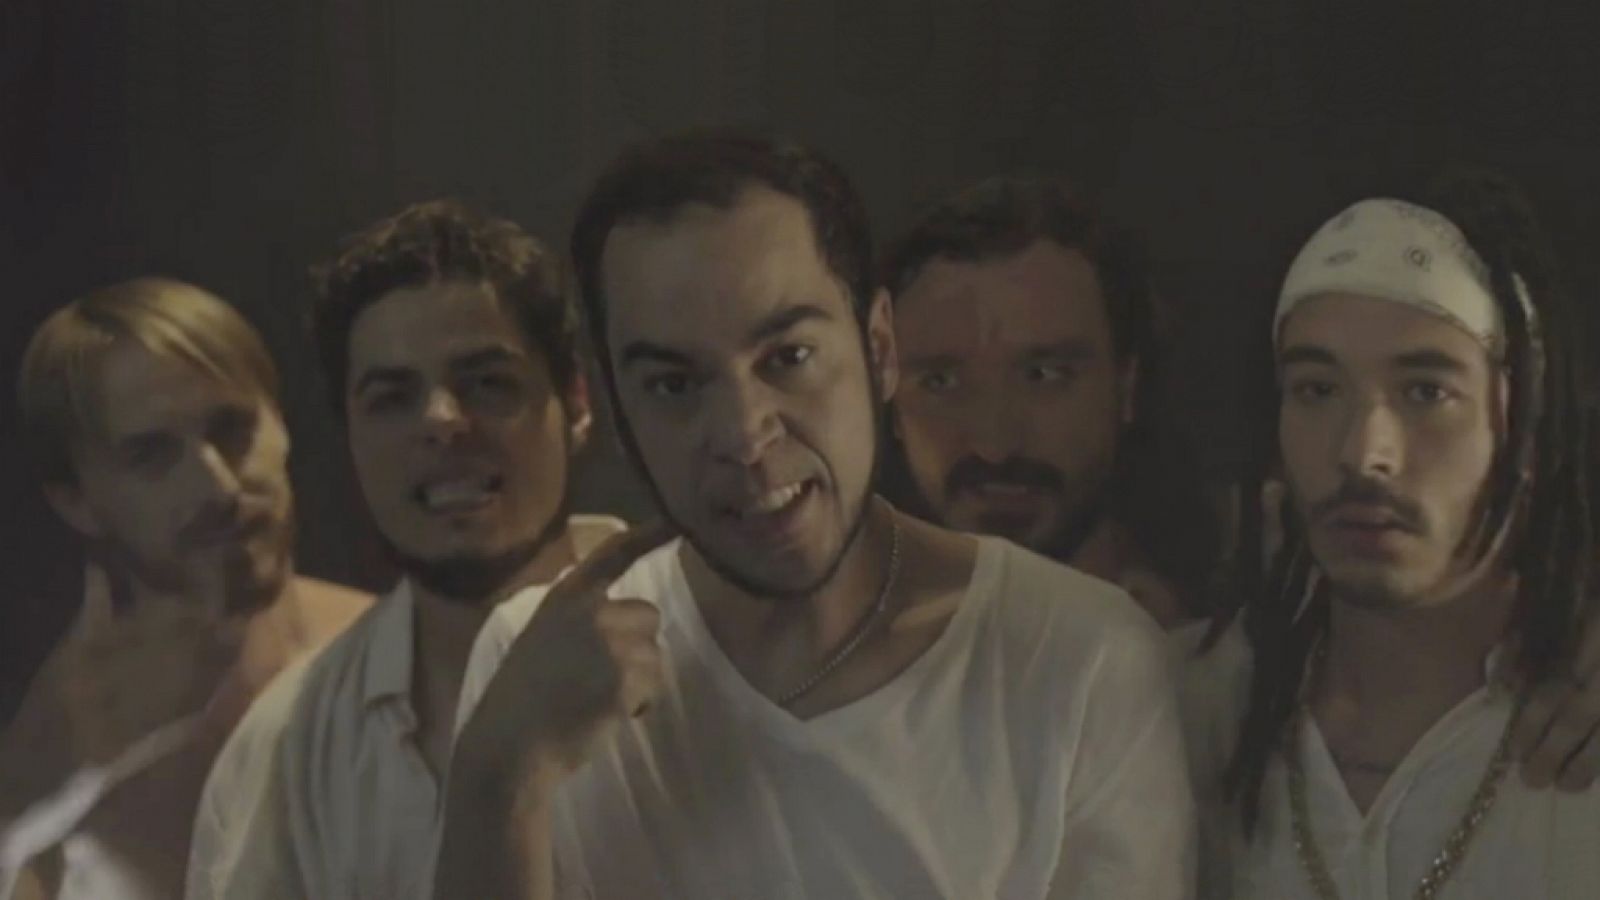 Mambo - El videoclip de la boyband, "nasíos" para triunfar